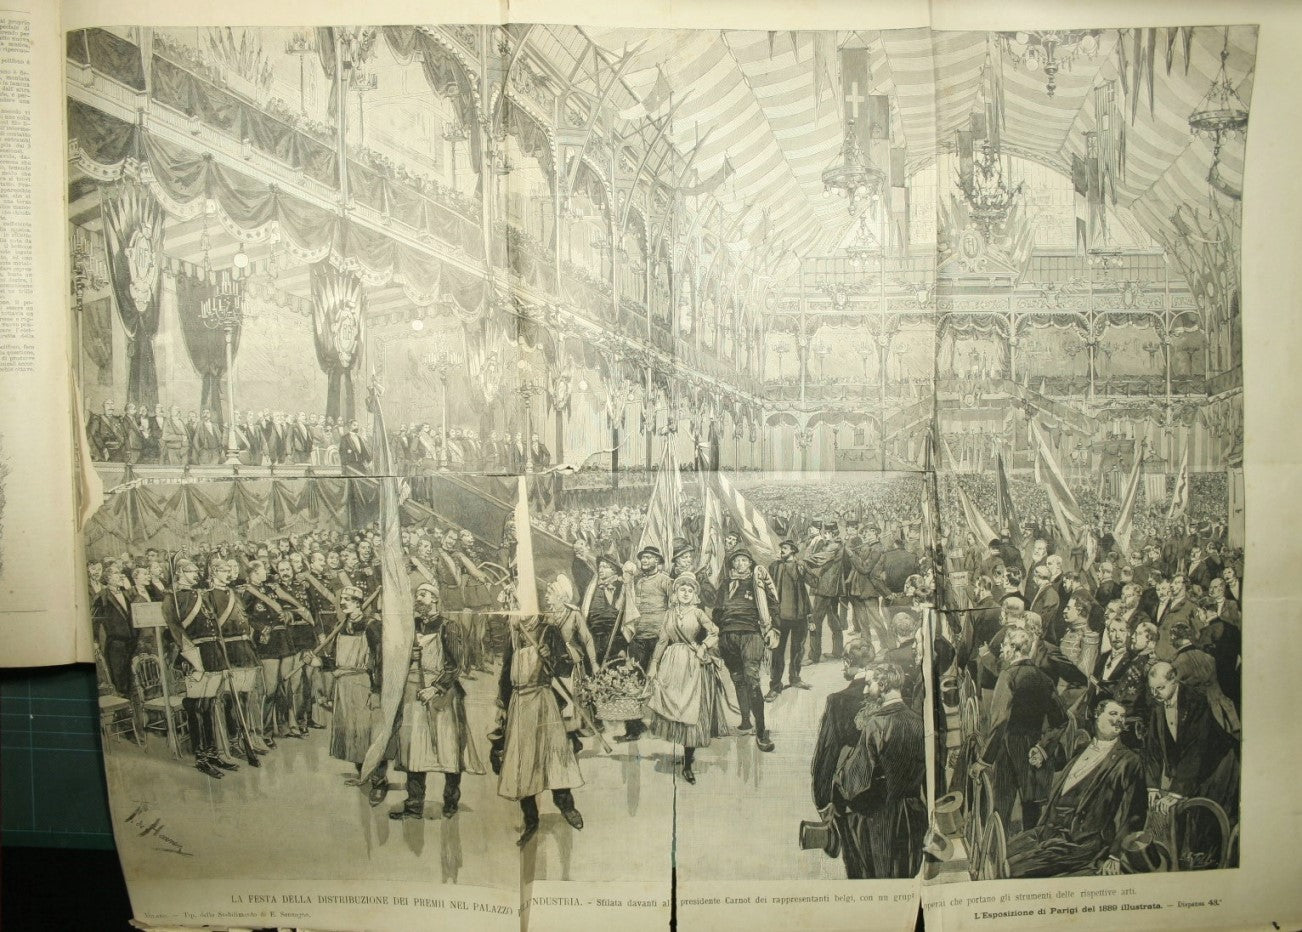 L'esposizione di Parigi del 1889 illustrata